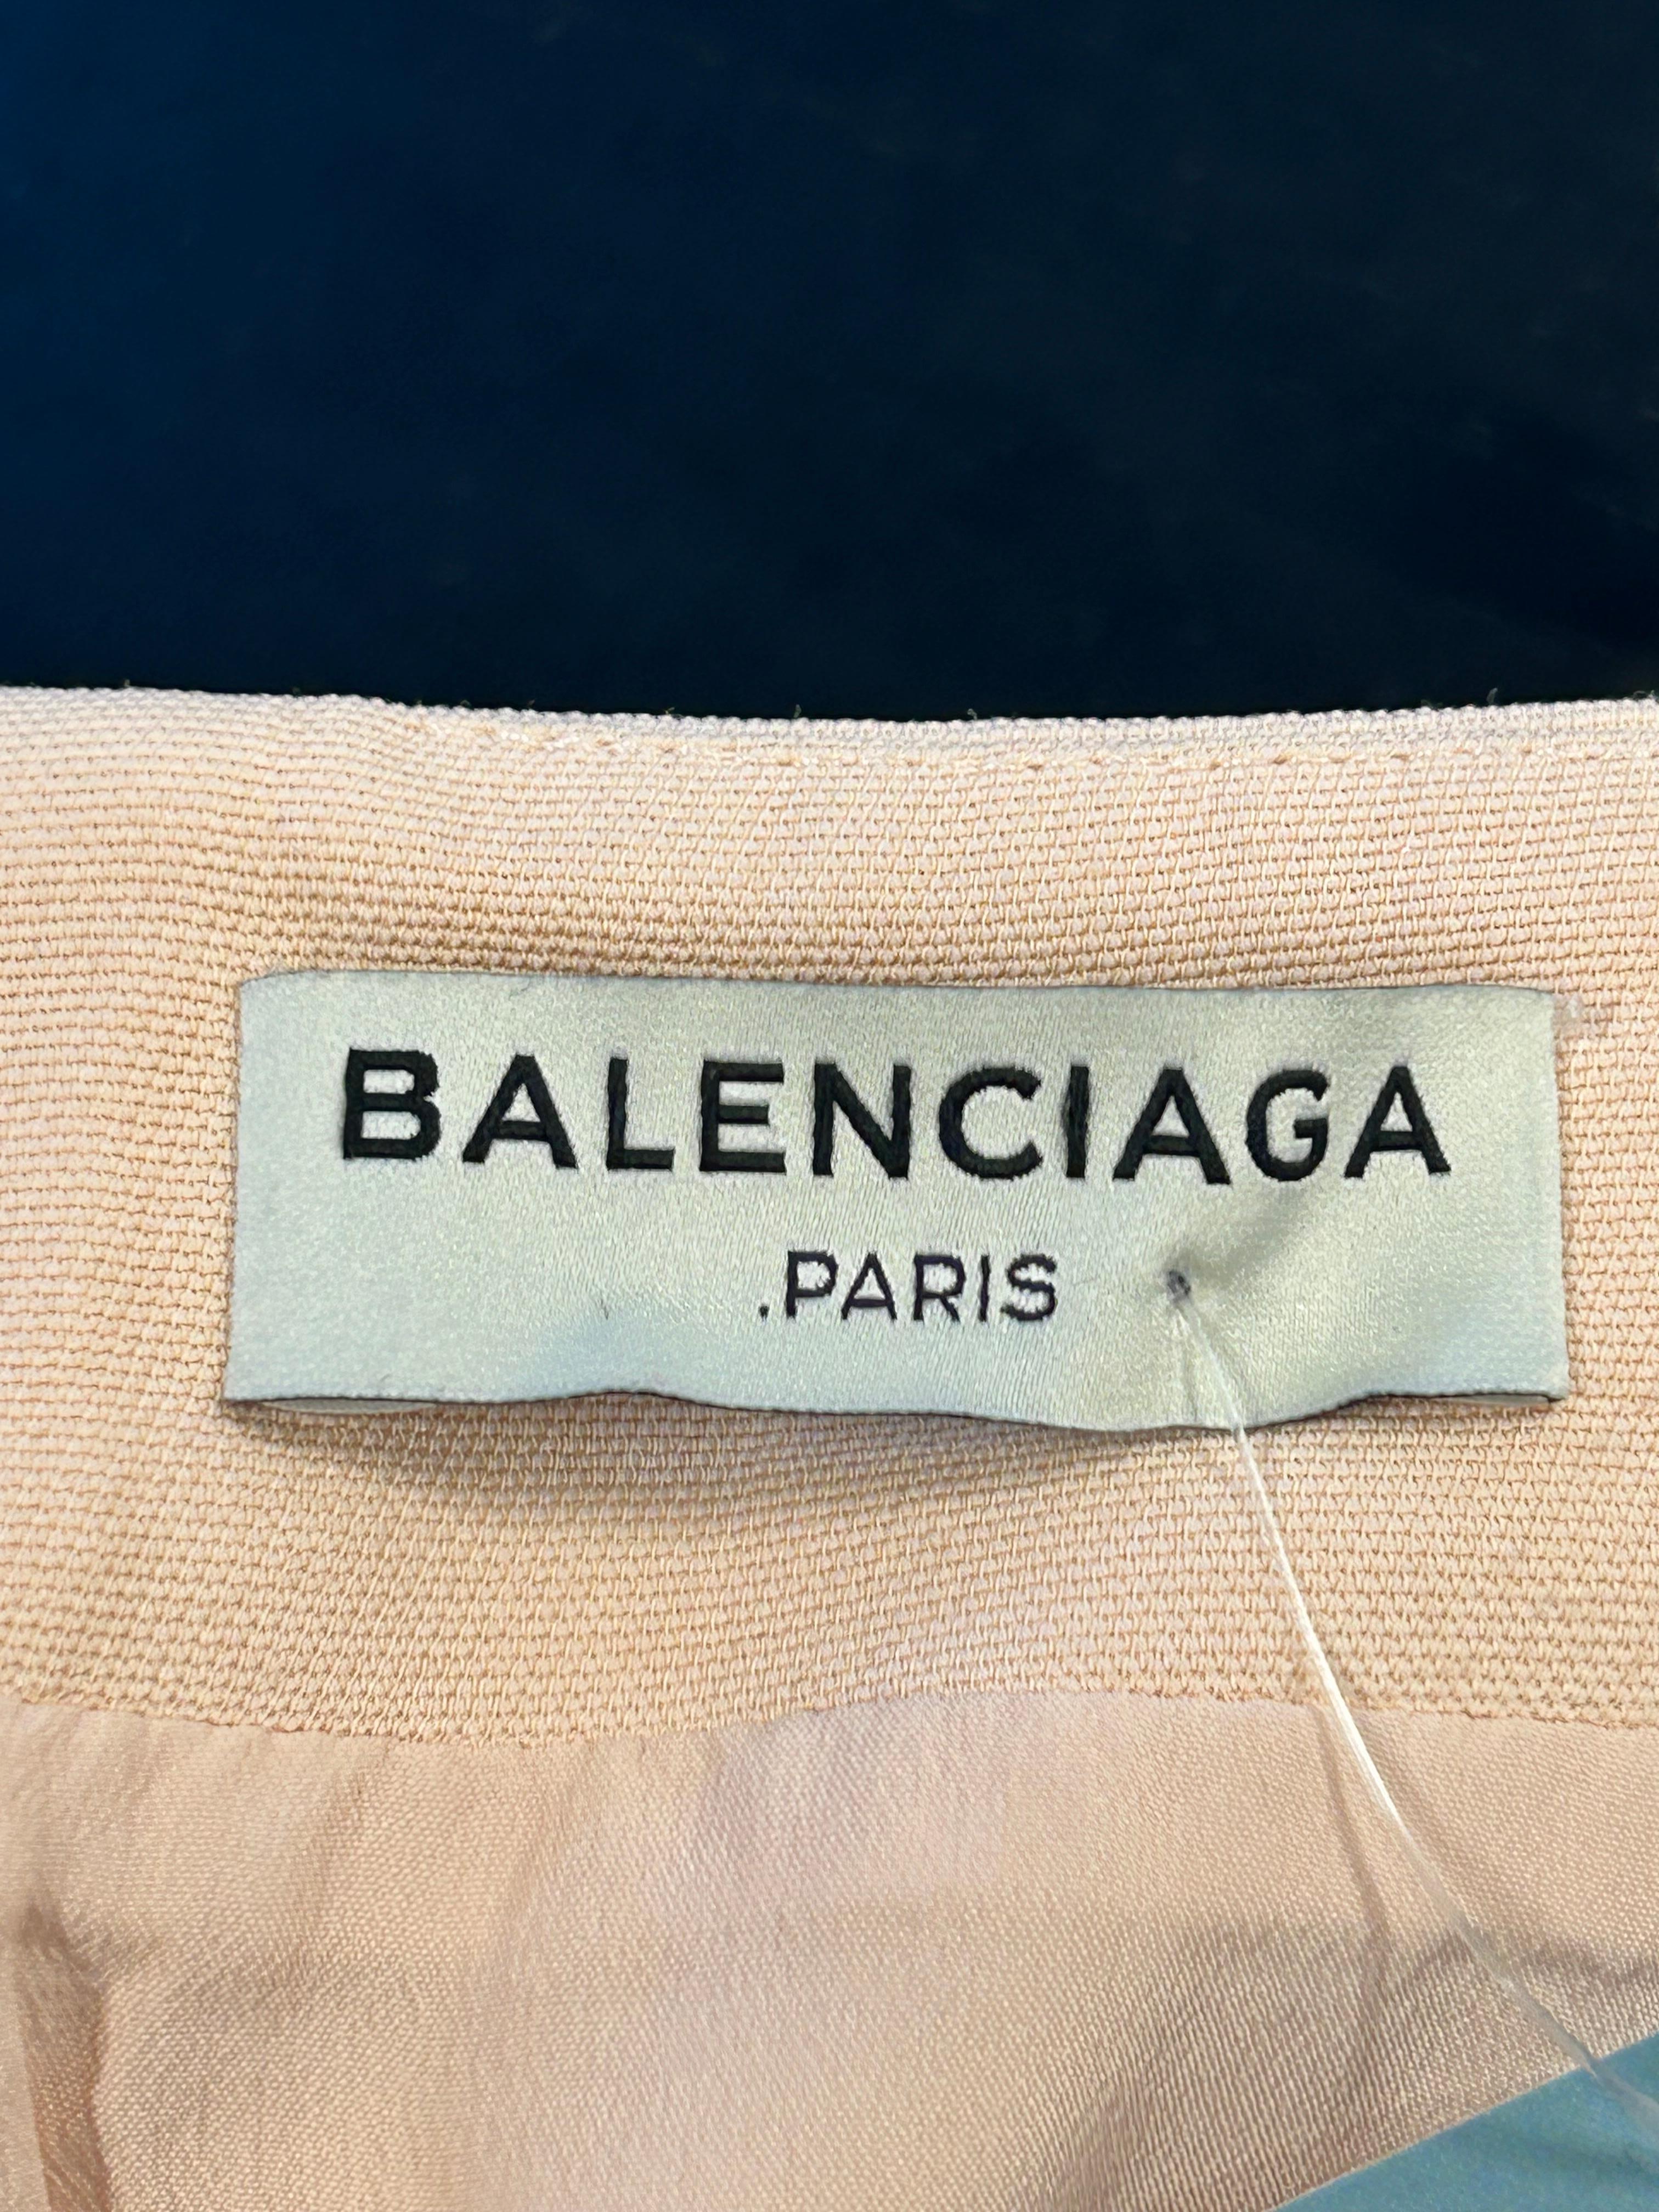 Balenciaga Pink Flared Skirt Size EU 38 For Sale 2